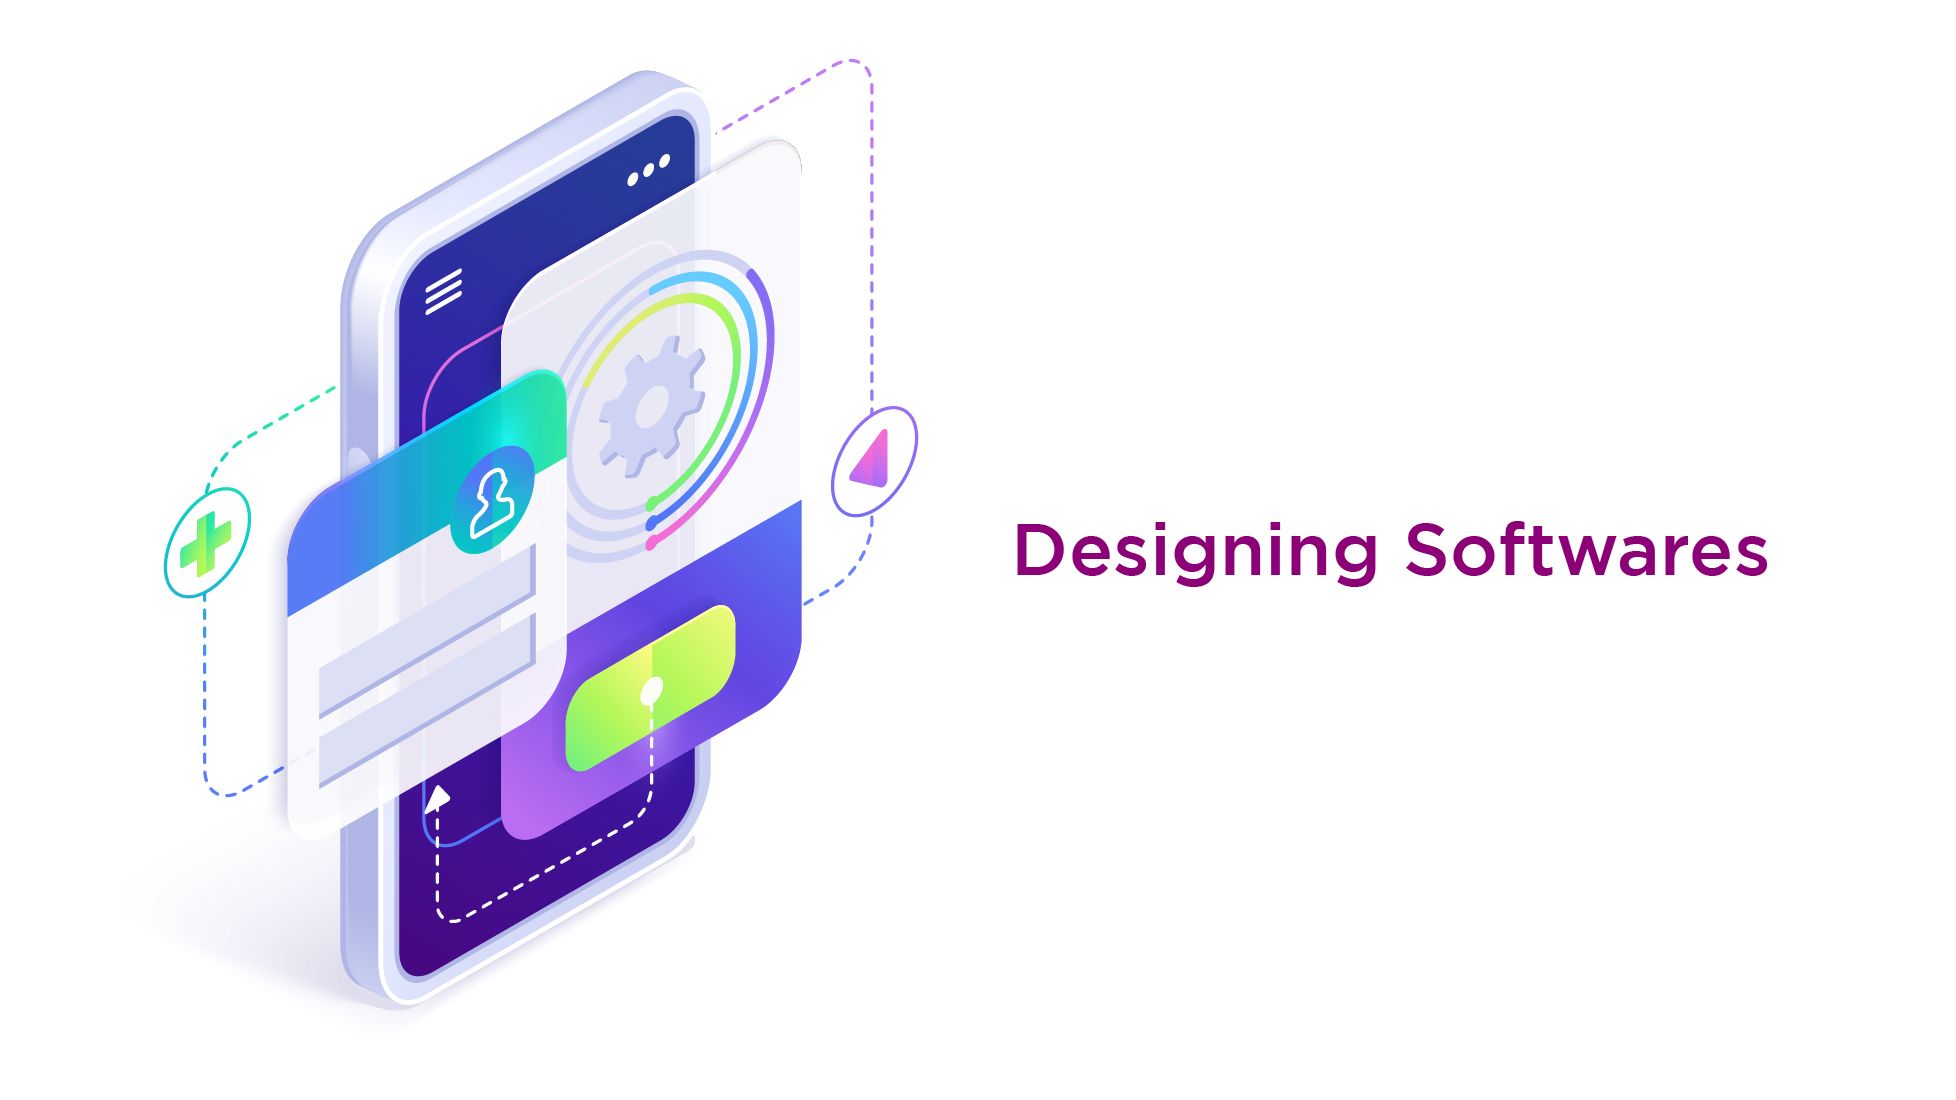 Designing Softwares